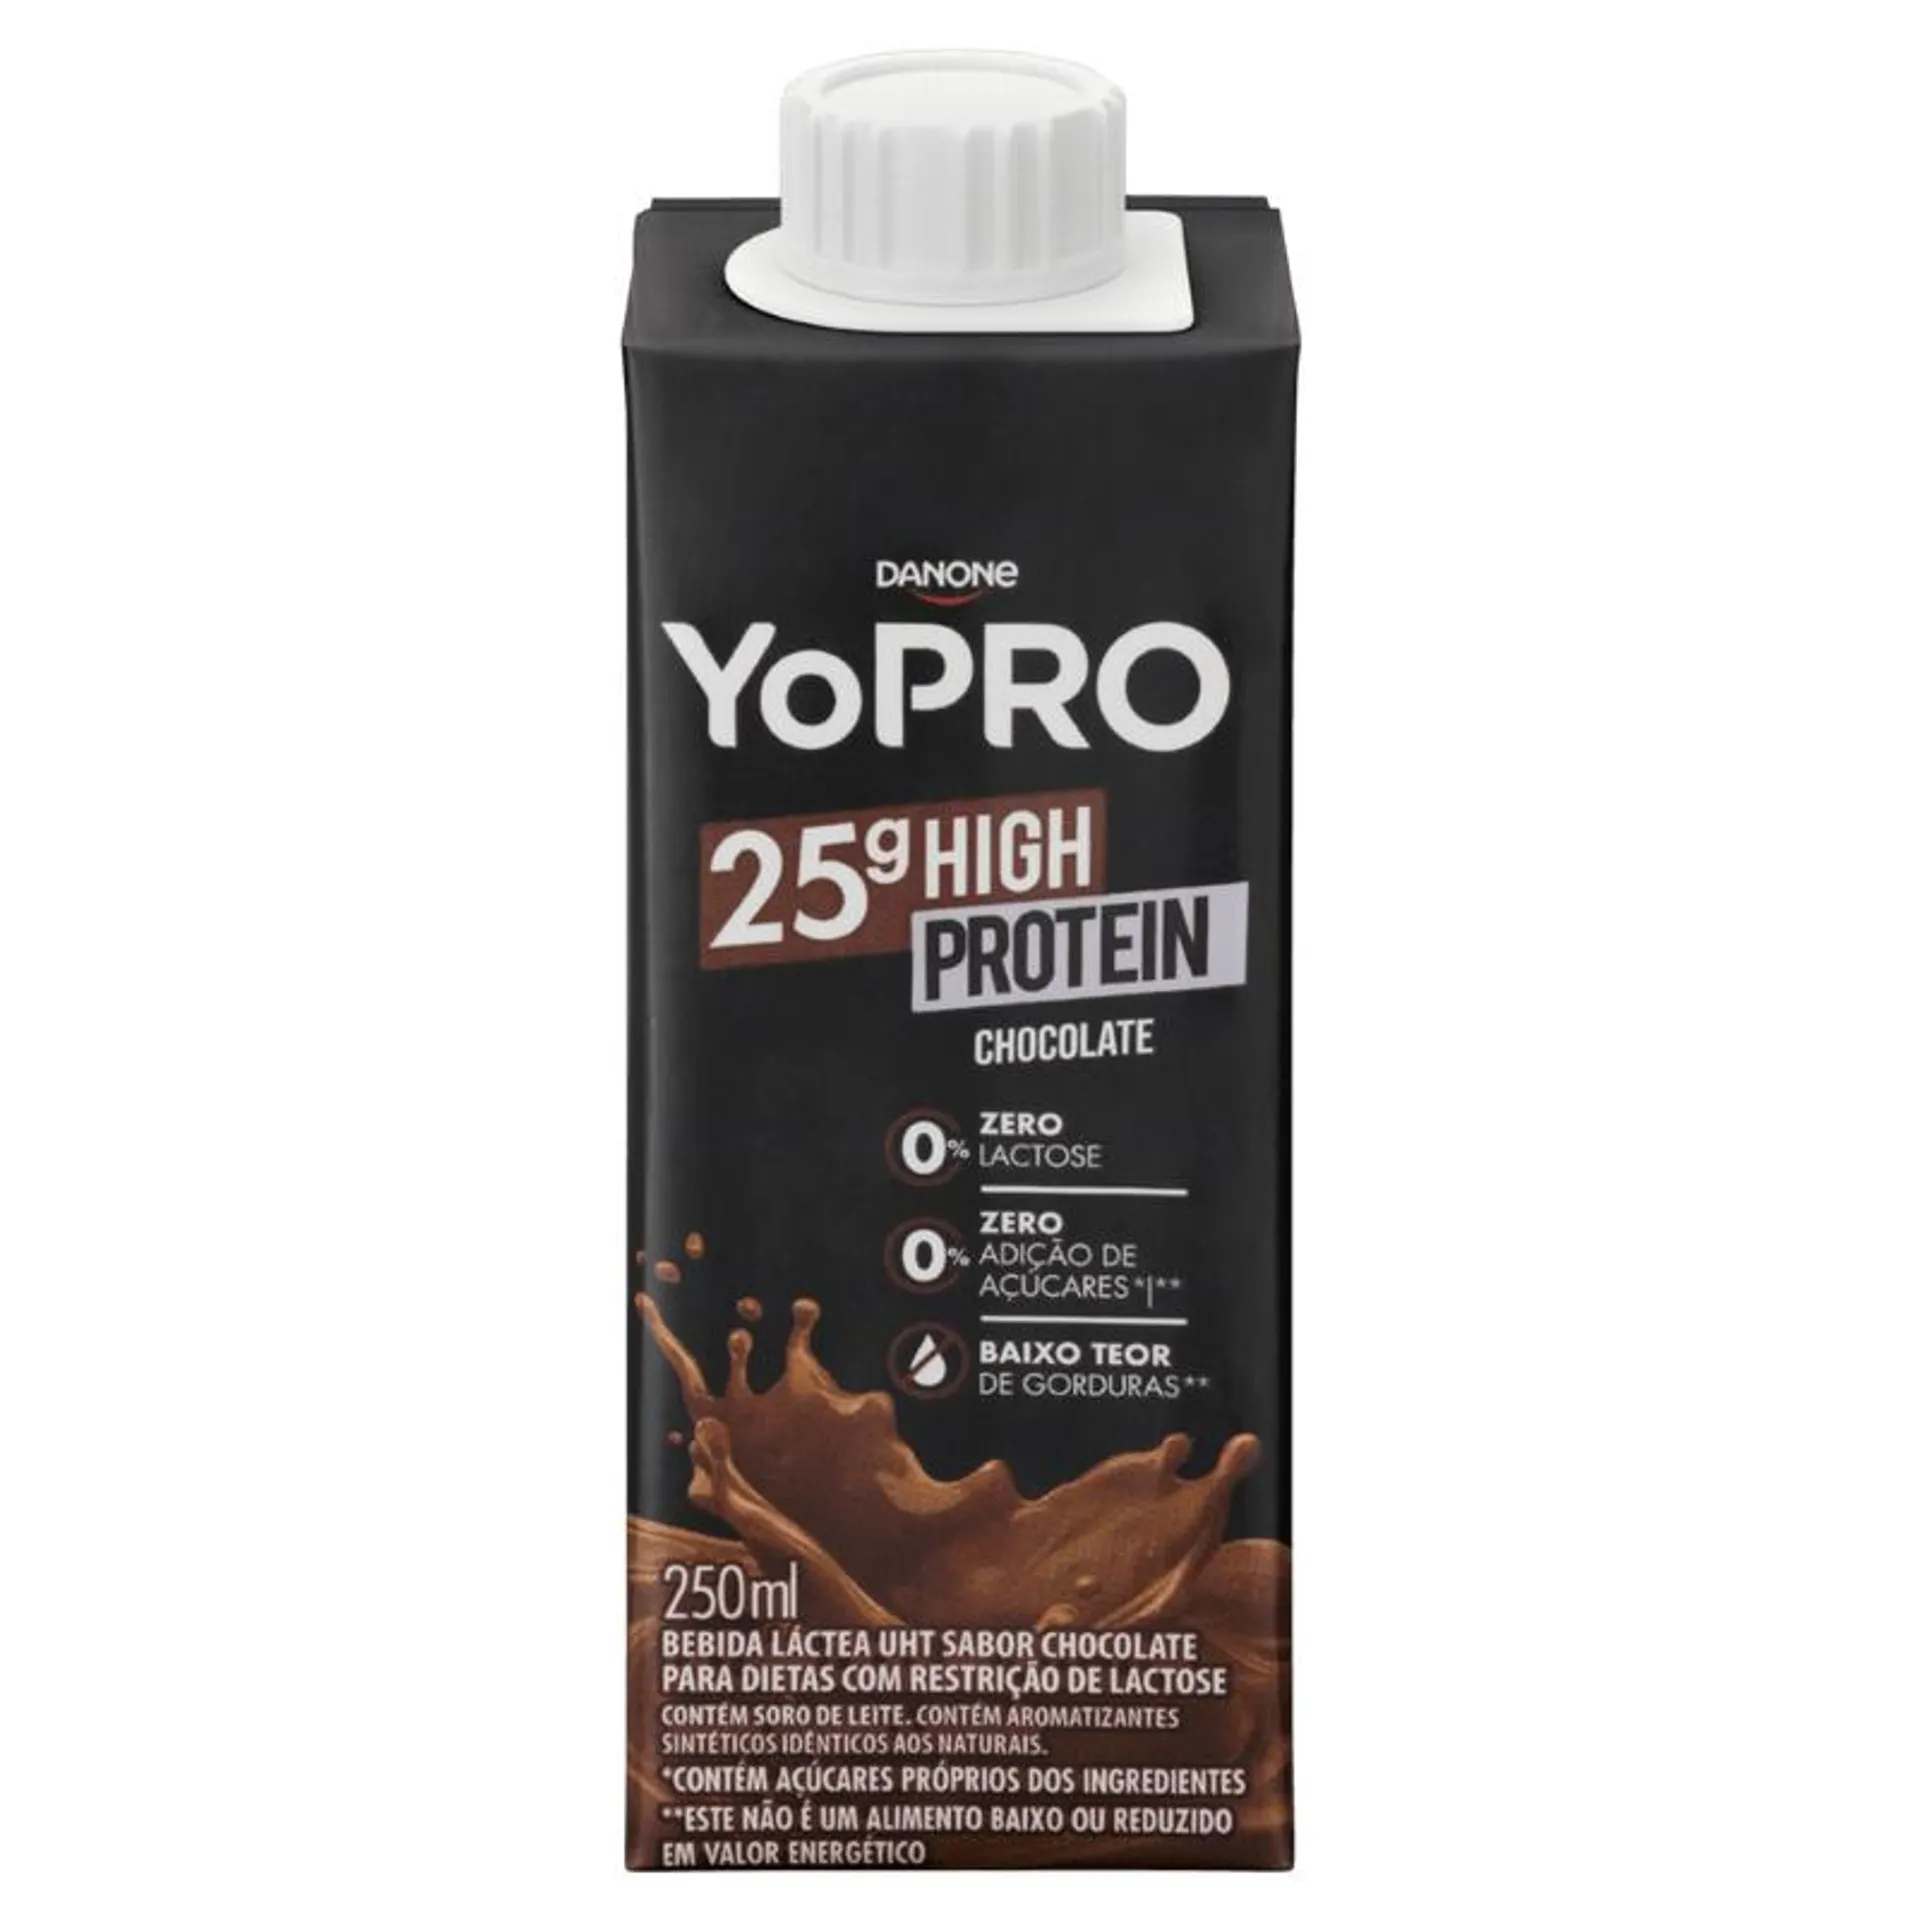 Yopro 25g Chocolate - 250ml